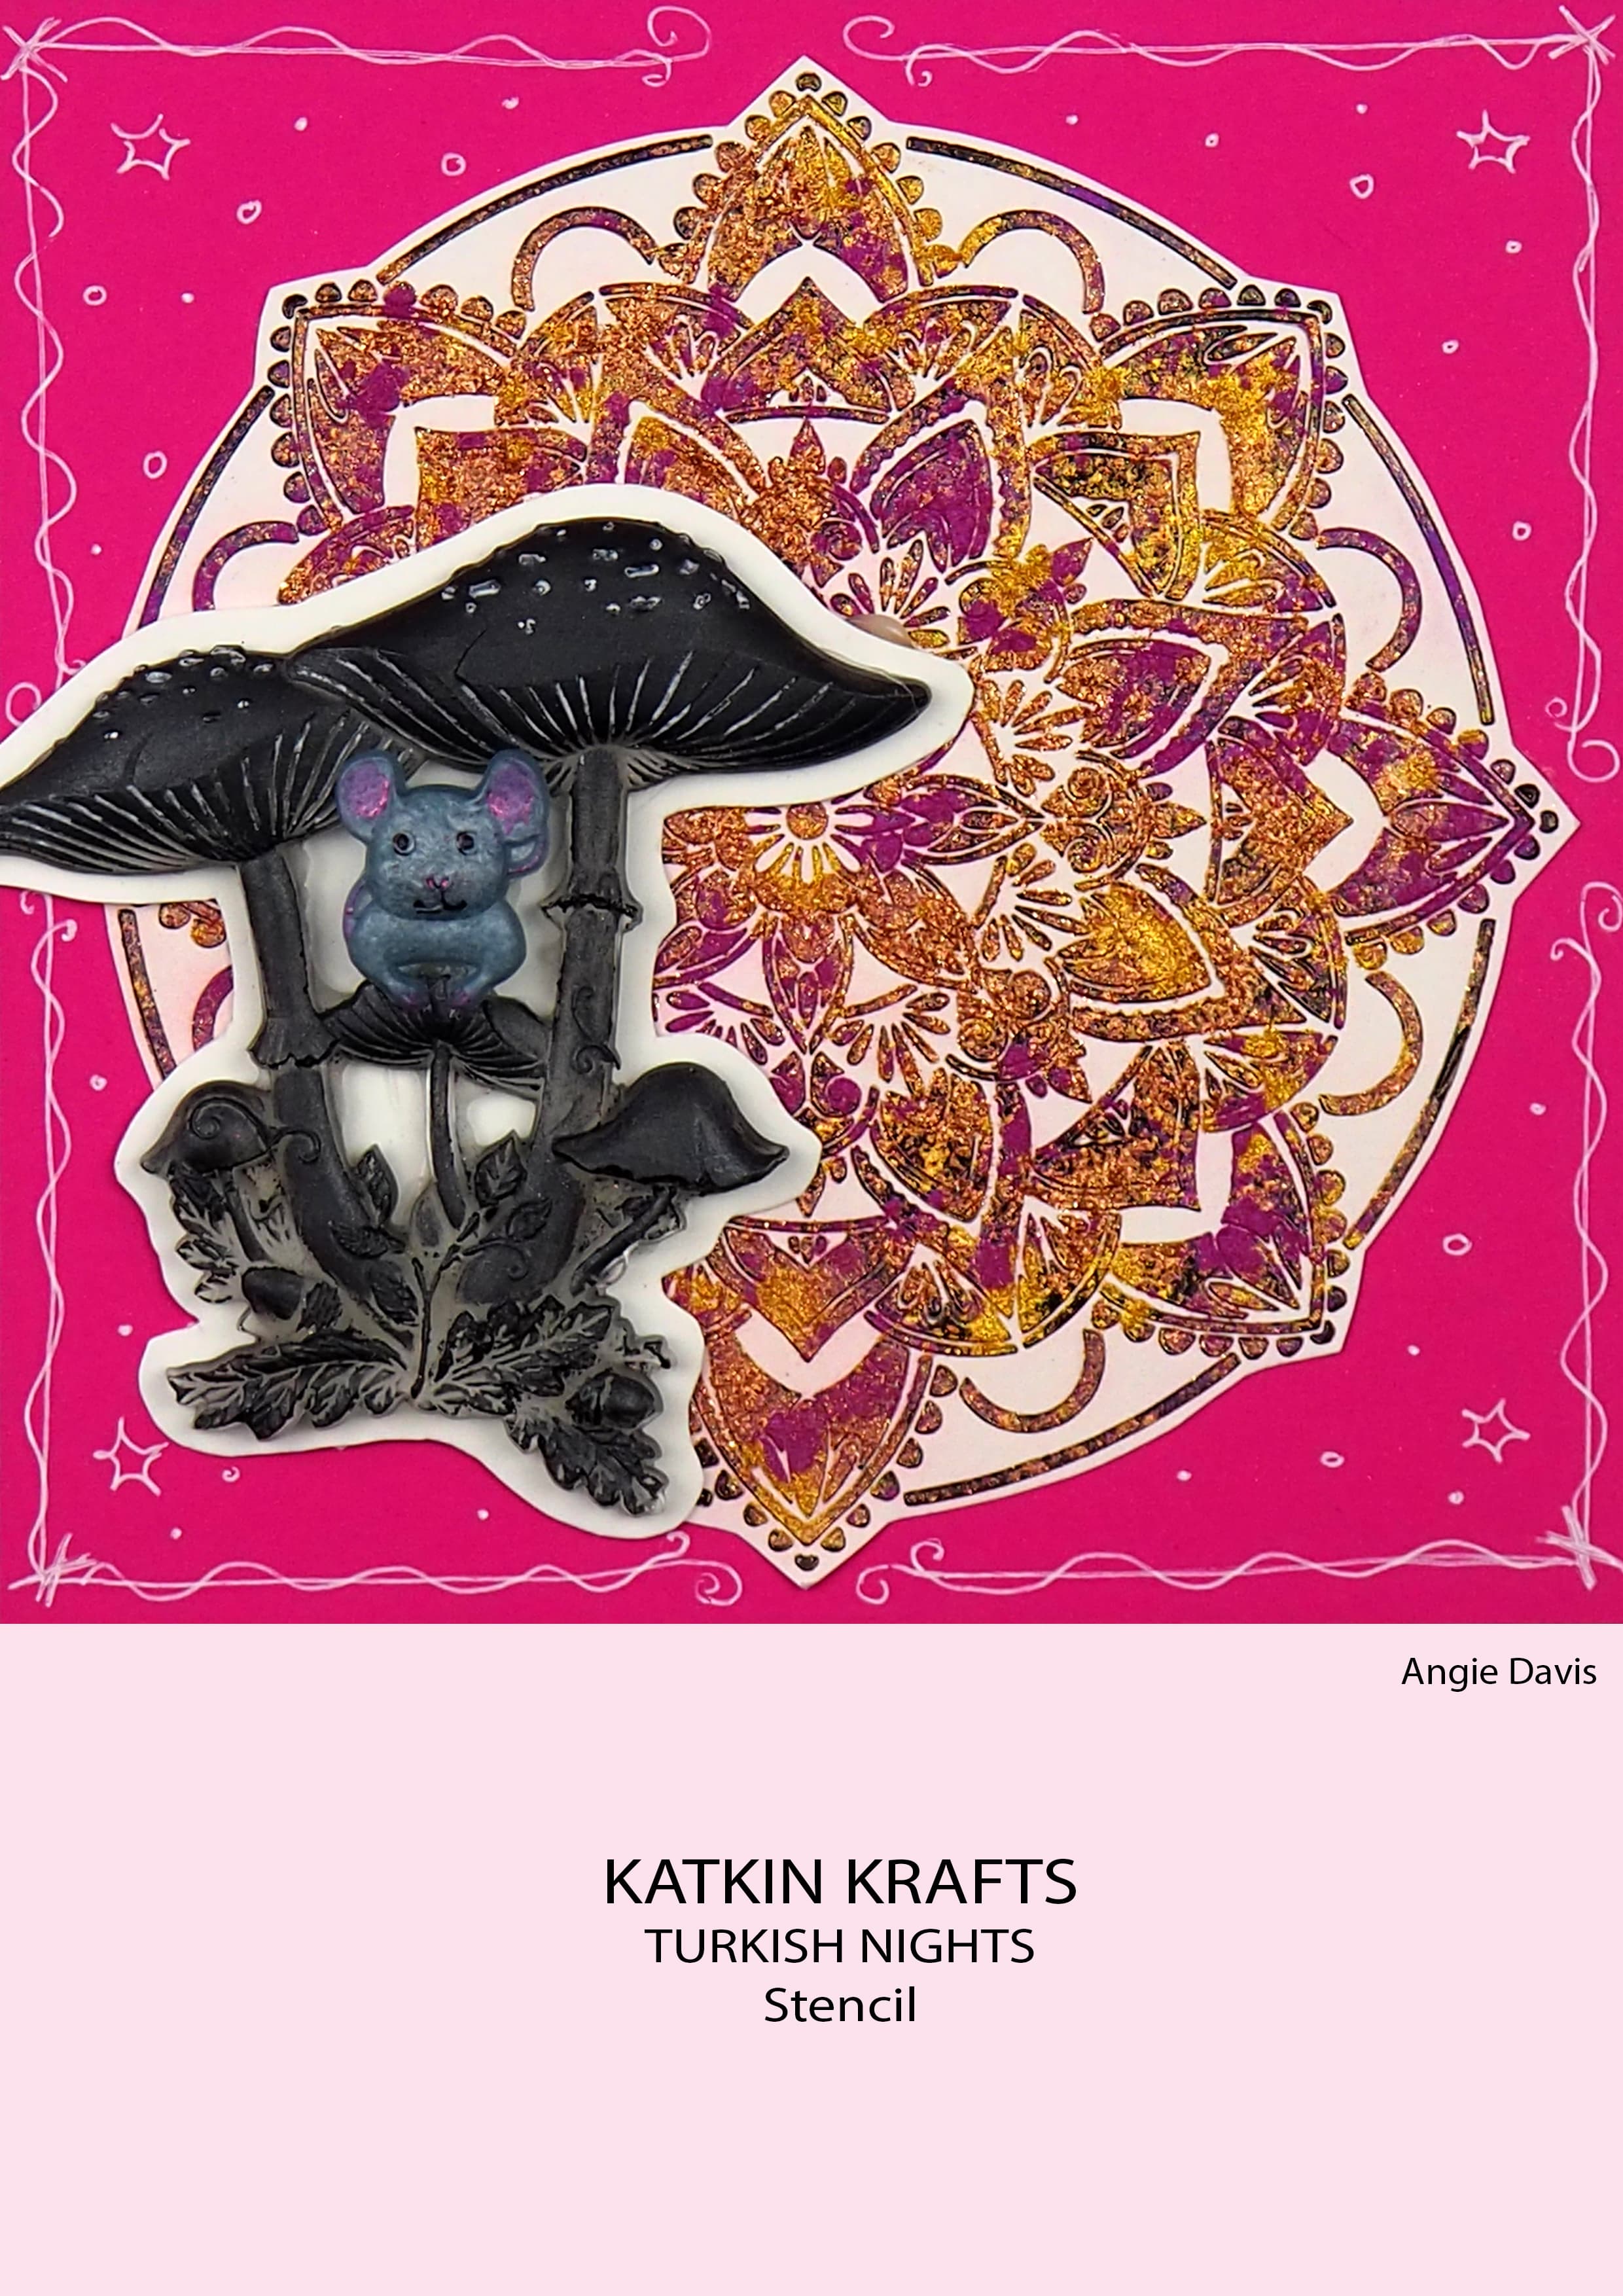 Katkin Krafts Turkish Nights 7 in x 7 in Stencil